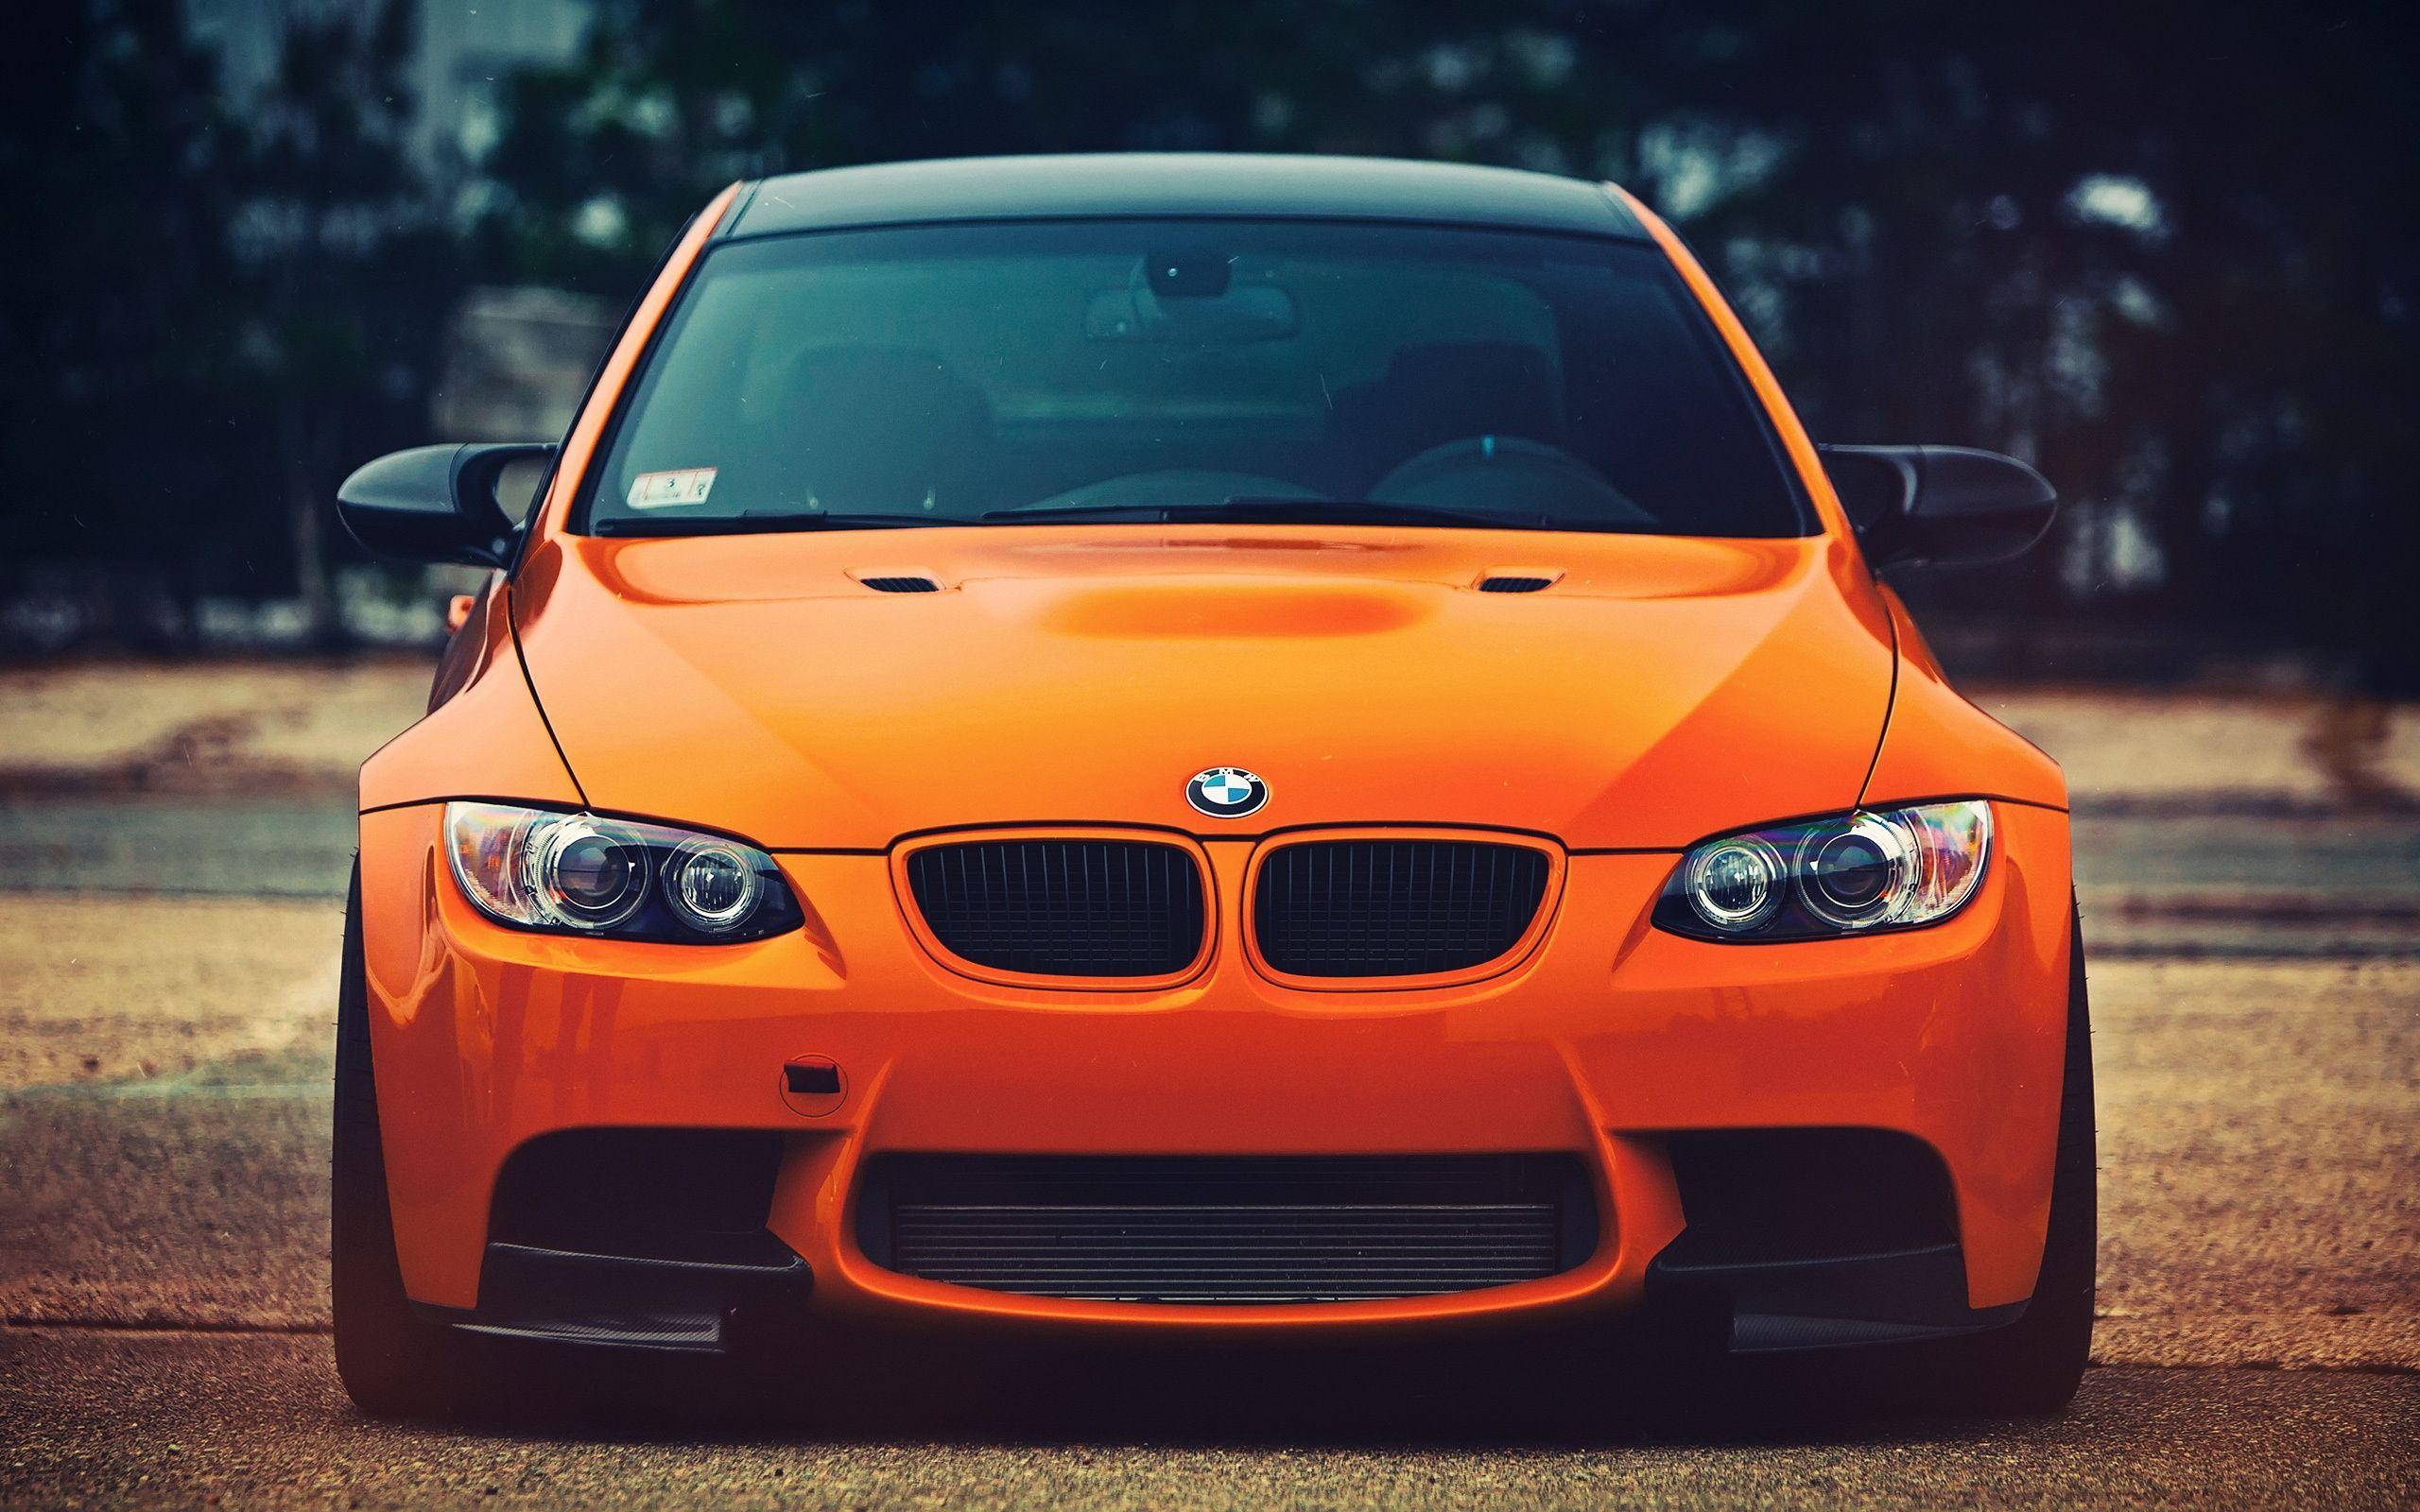 BMW M3 orange car front view Wallpaper. HD Desktop Wallpaper. Bmw m Bmw, Bmw cars